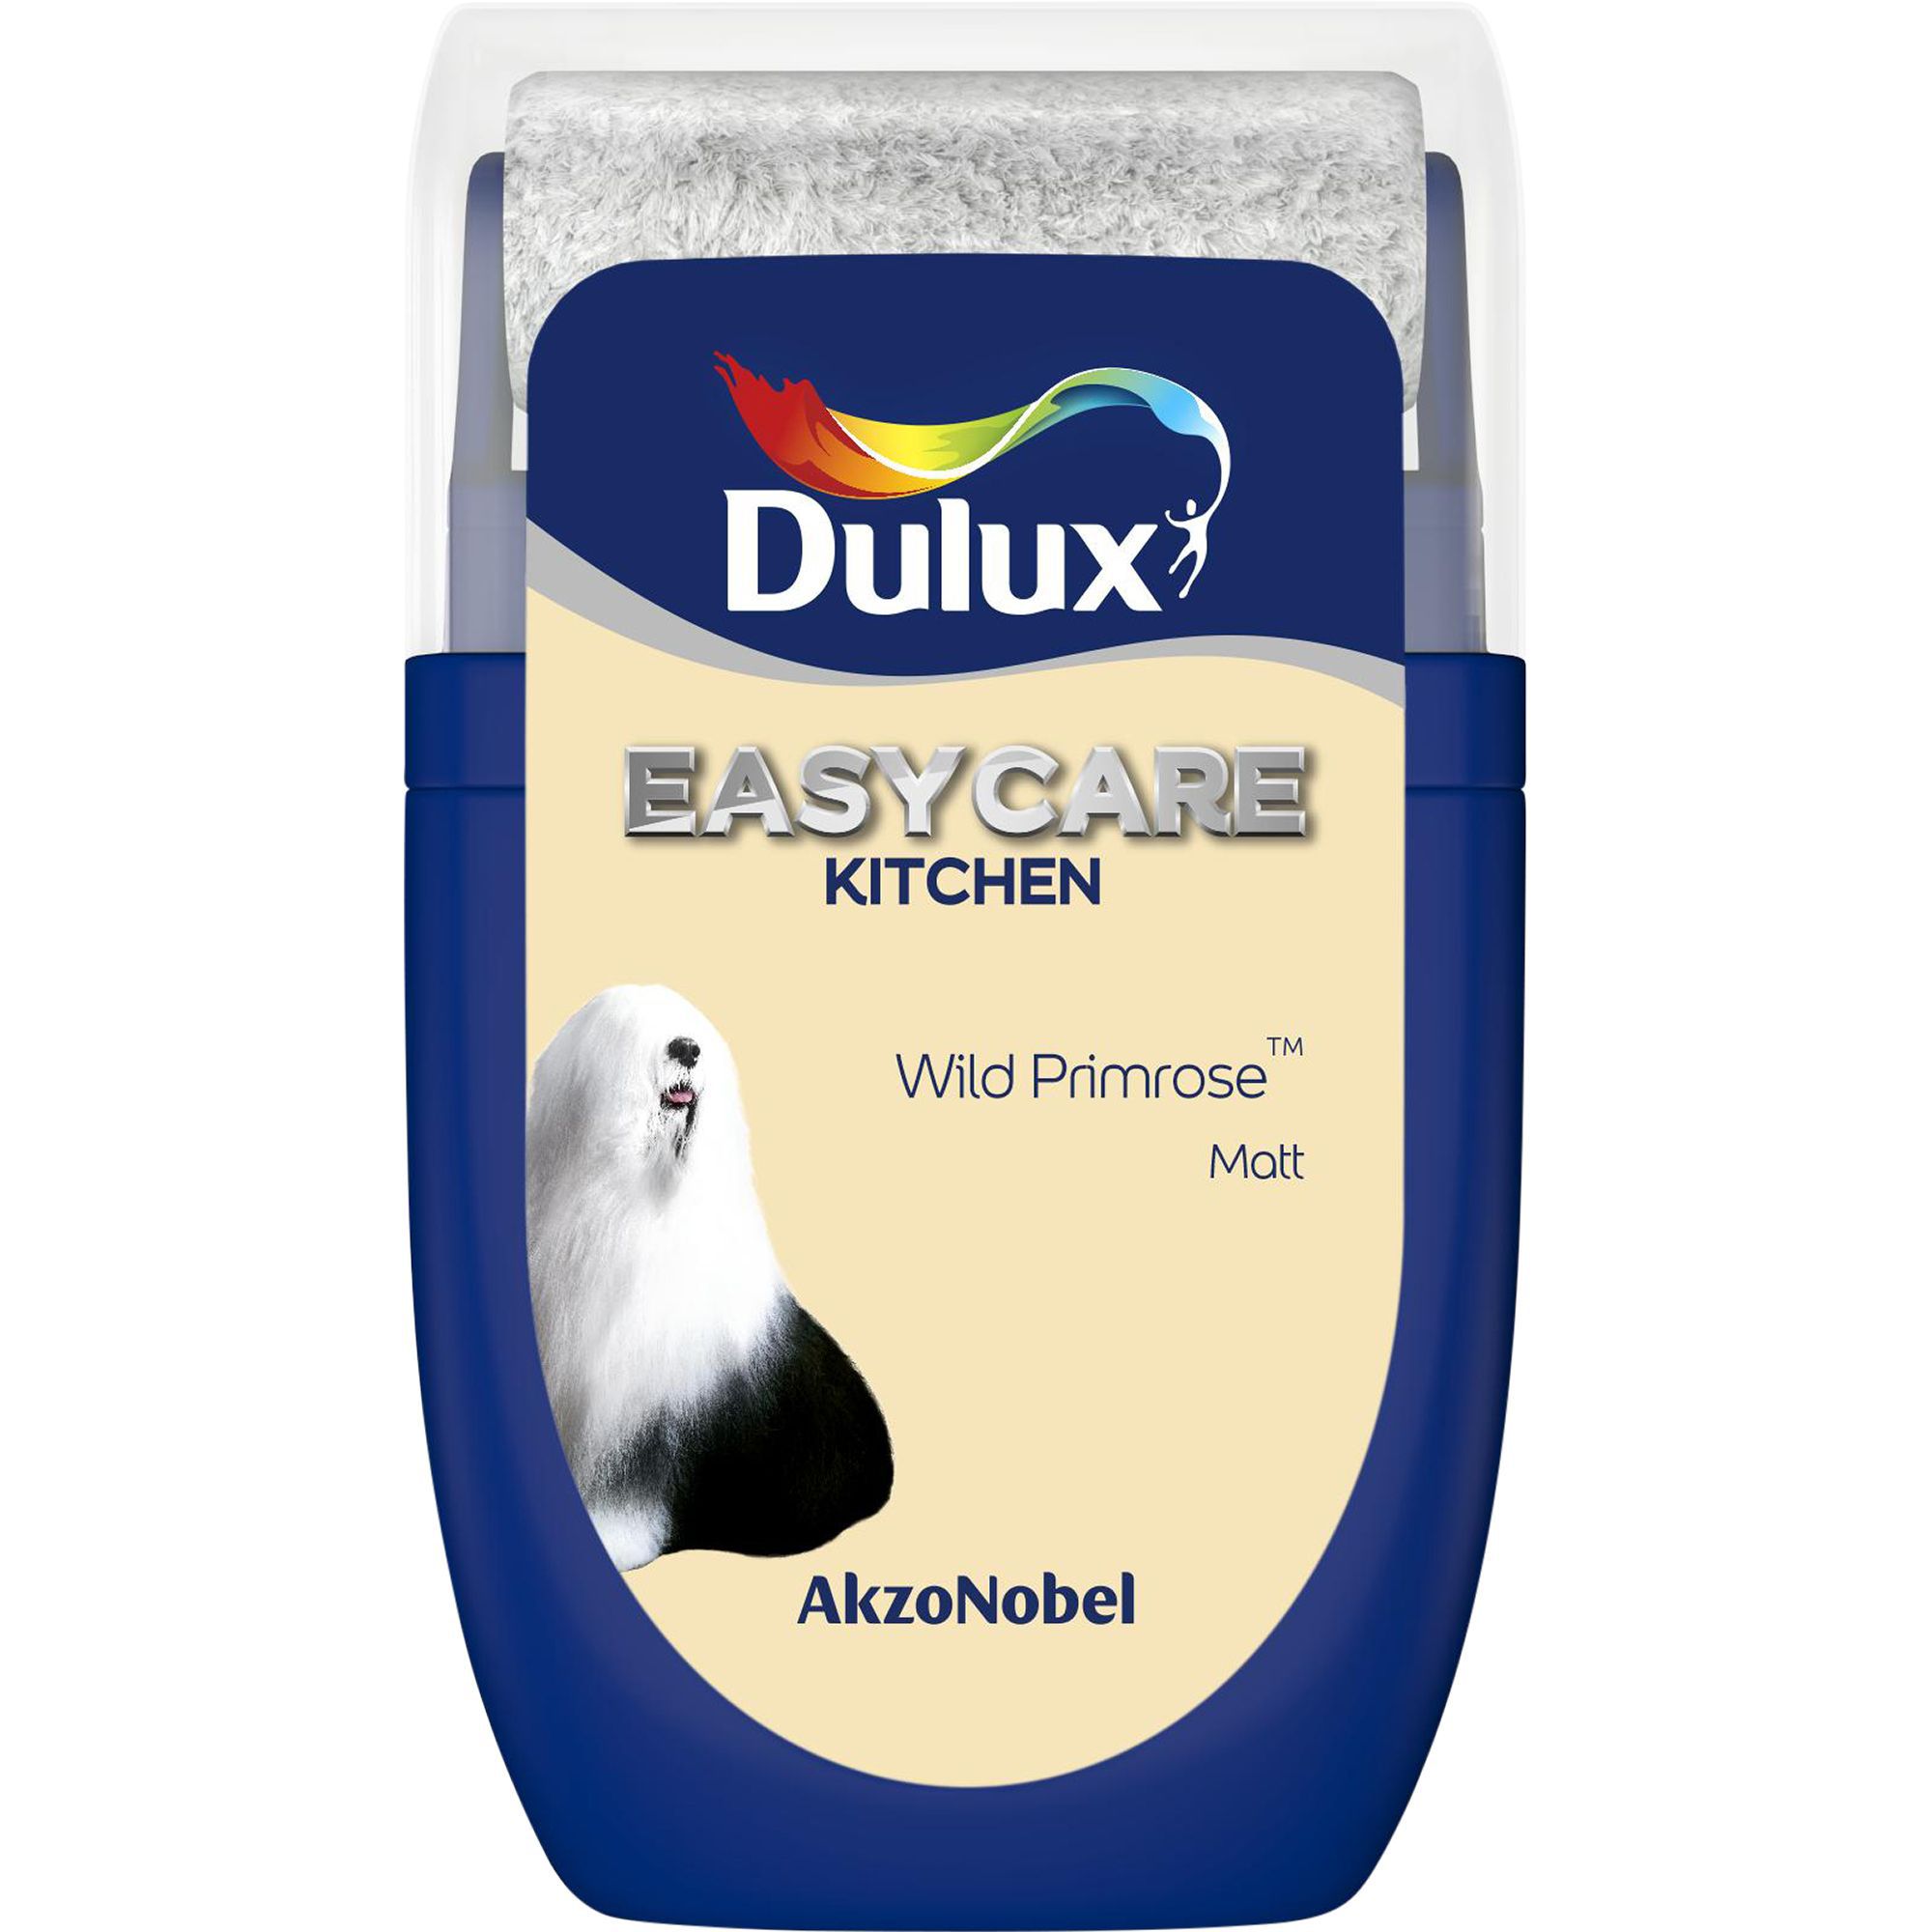 Dulux Easycare Wild primrose Matt Emulsion paint, 30ml